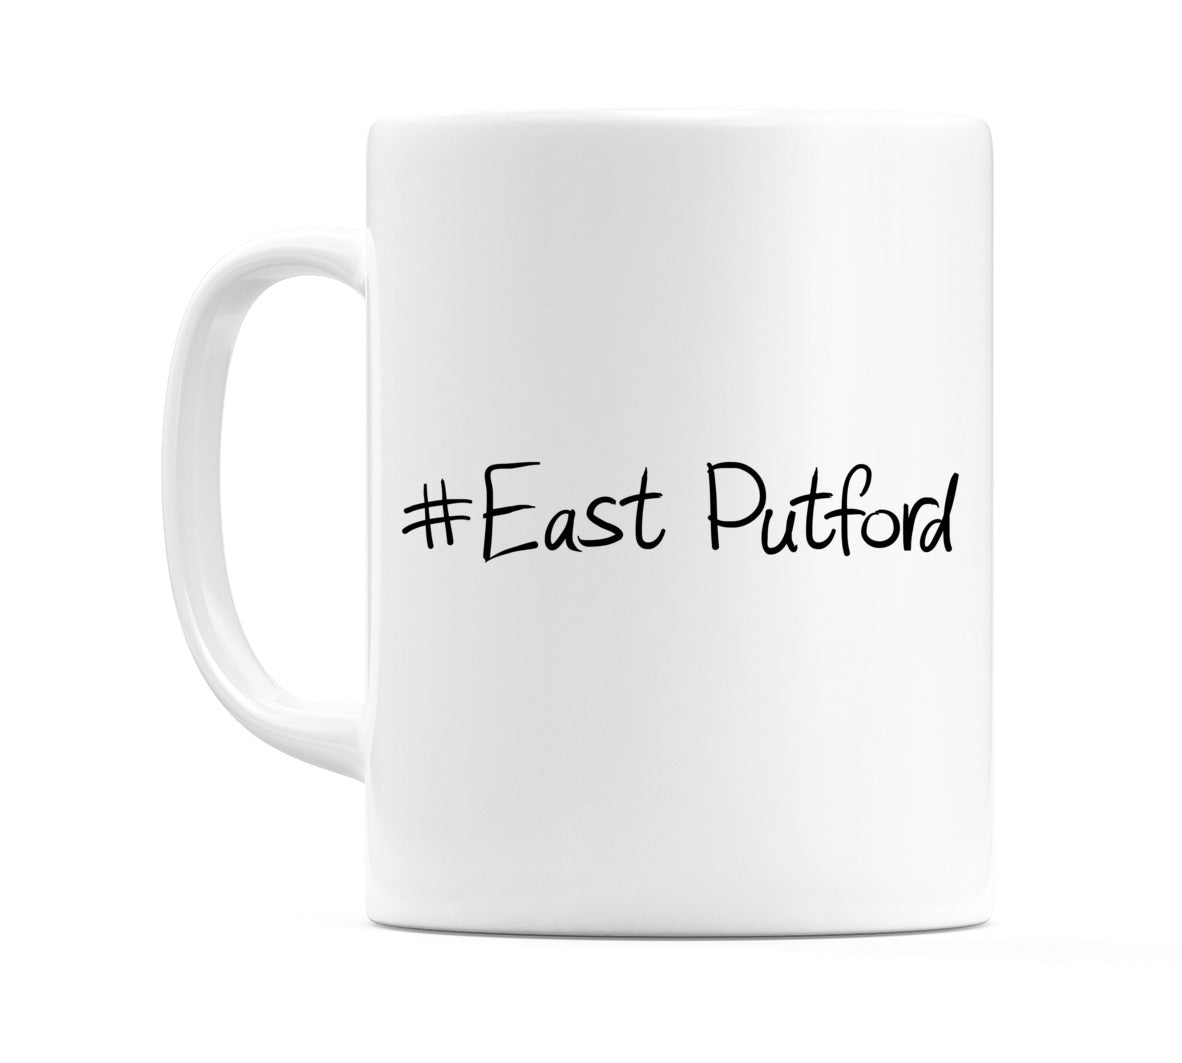 #East Putford Mug